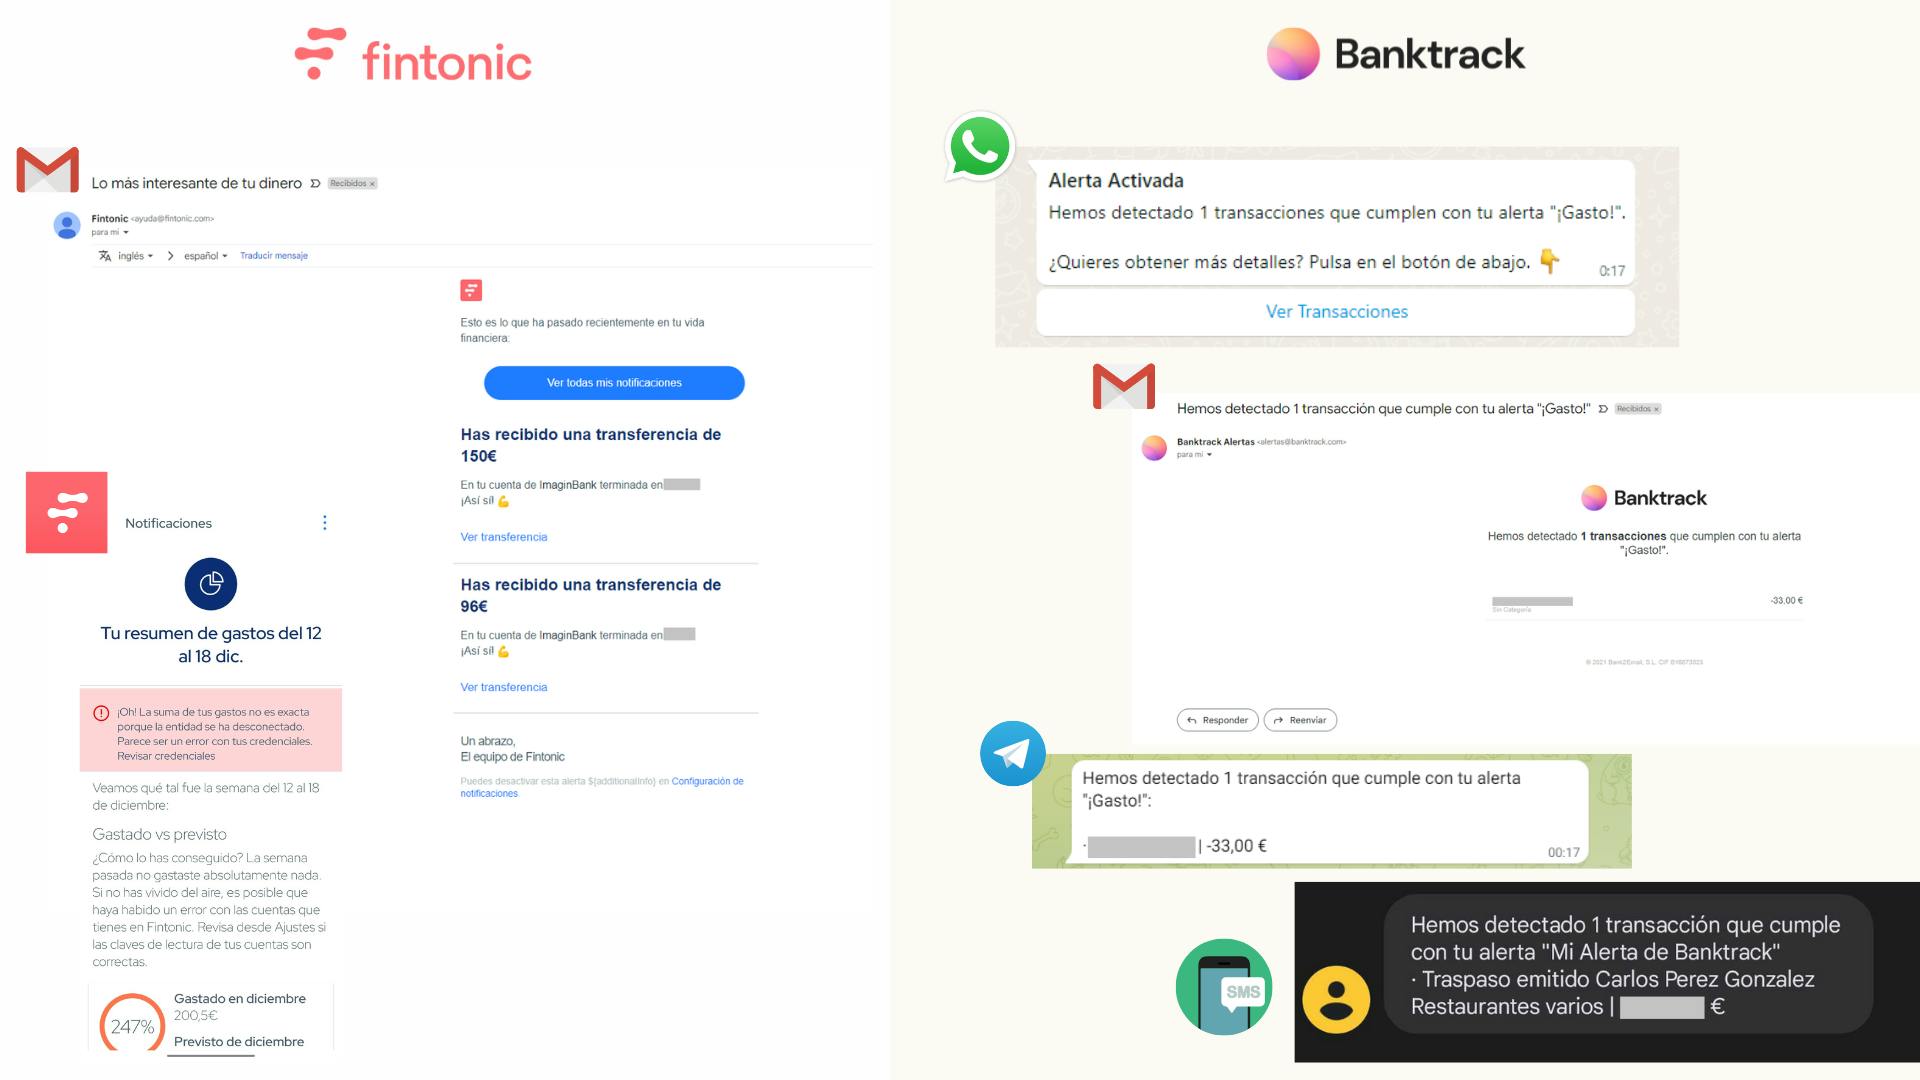 Capturas de las alertas recibidas por parte de Fintonic y Banktrack, la mejor alternativa a Fintonic en finanzas personales